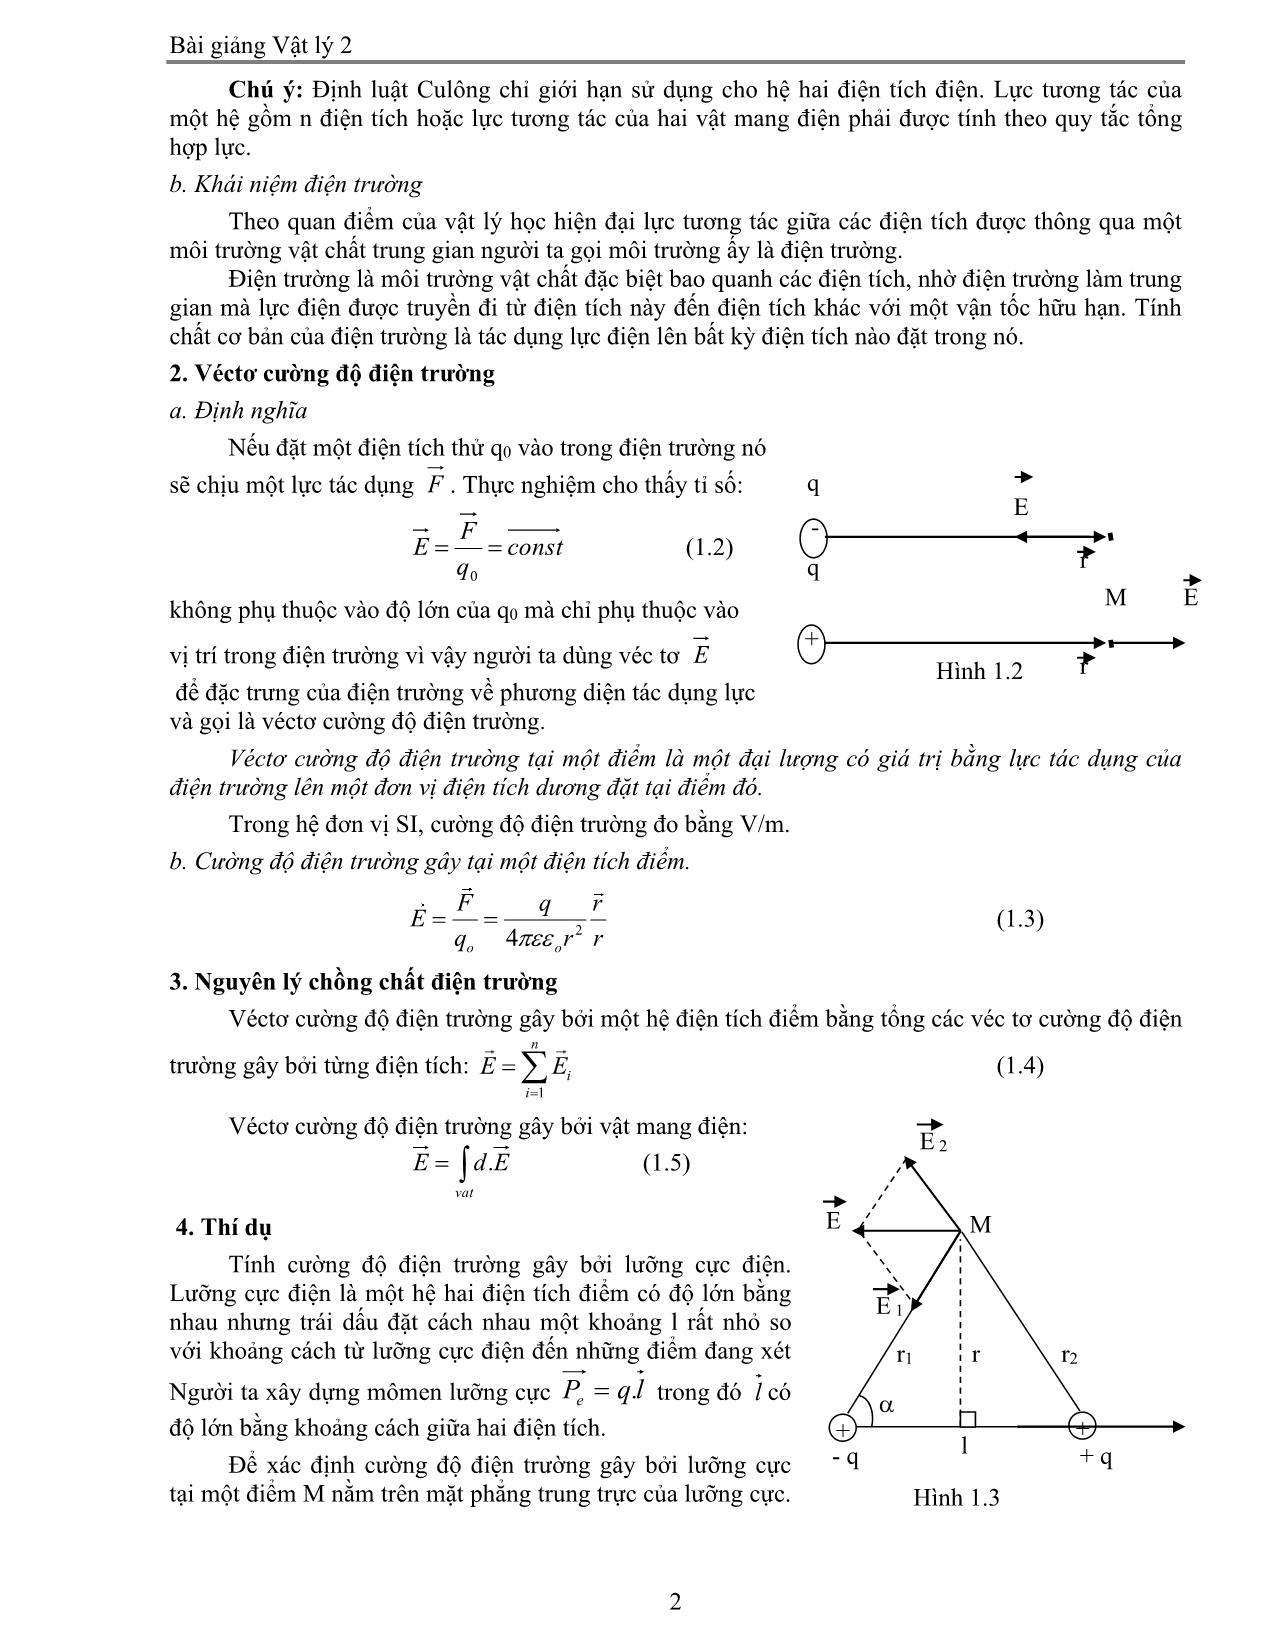 Giáo trình Vật lý 2 trang 2